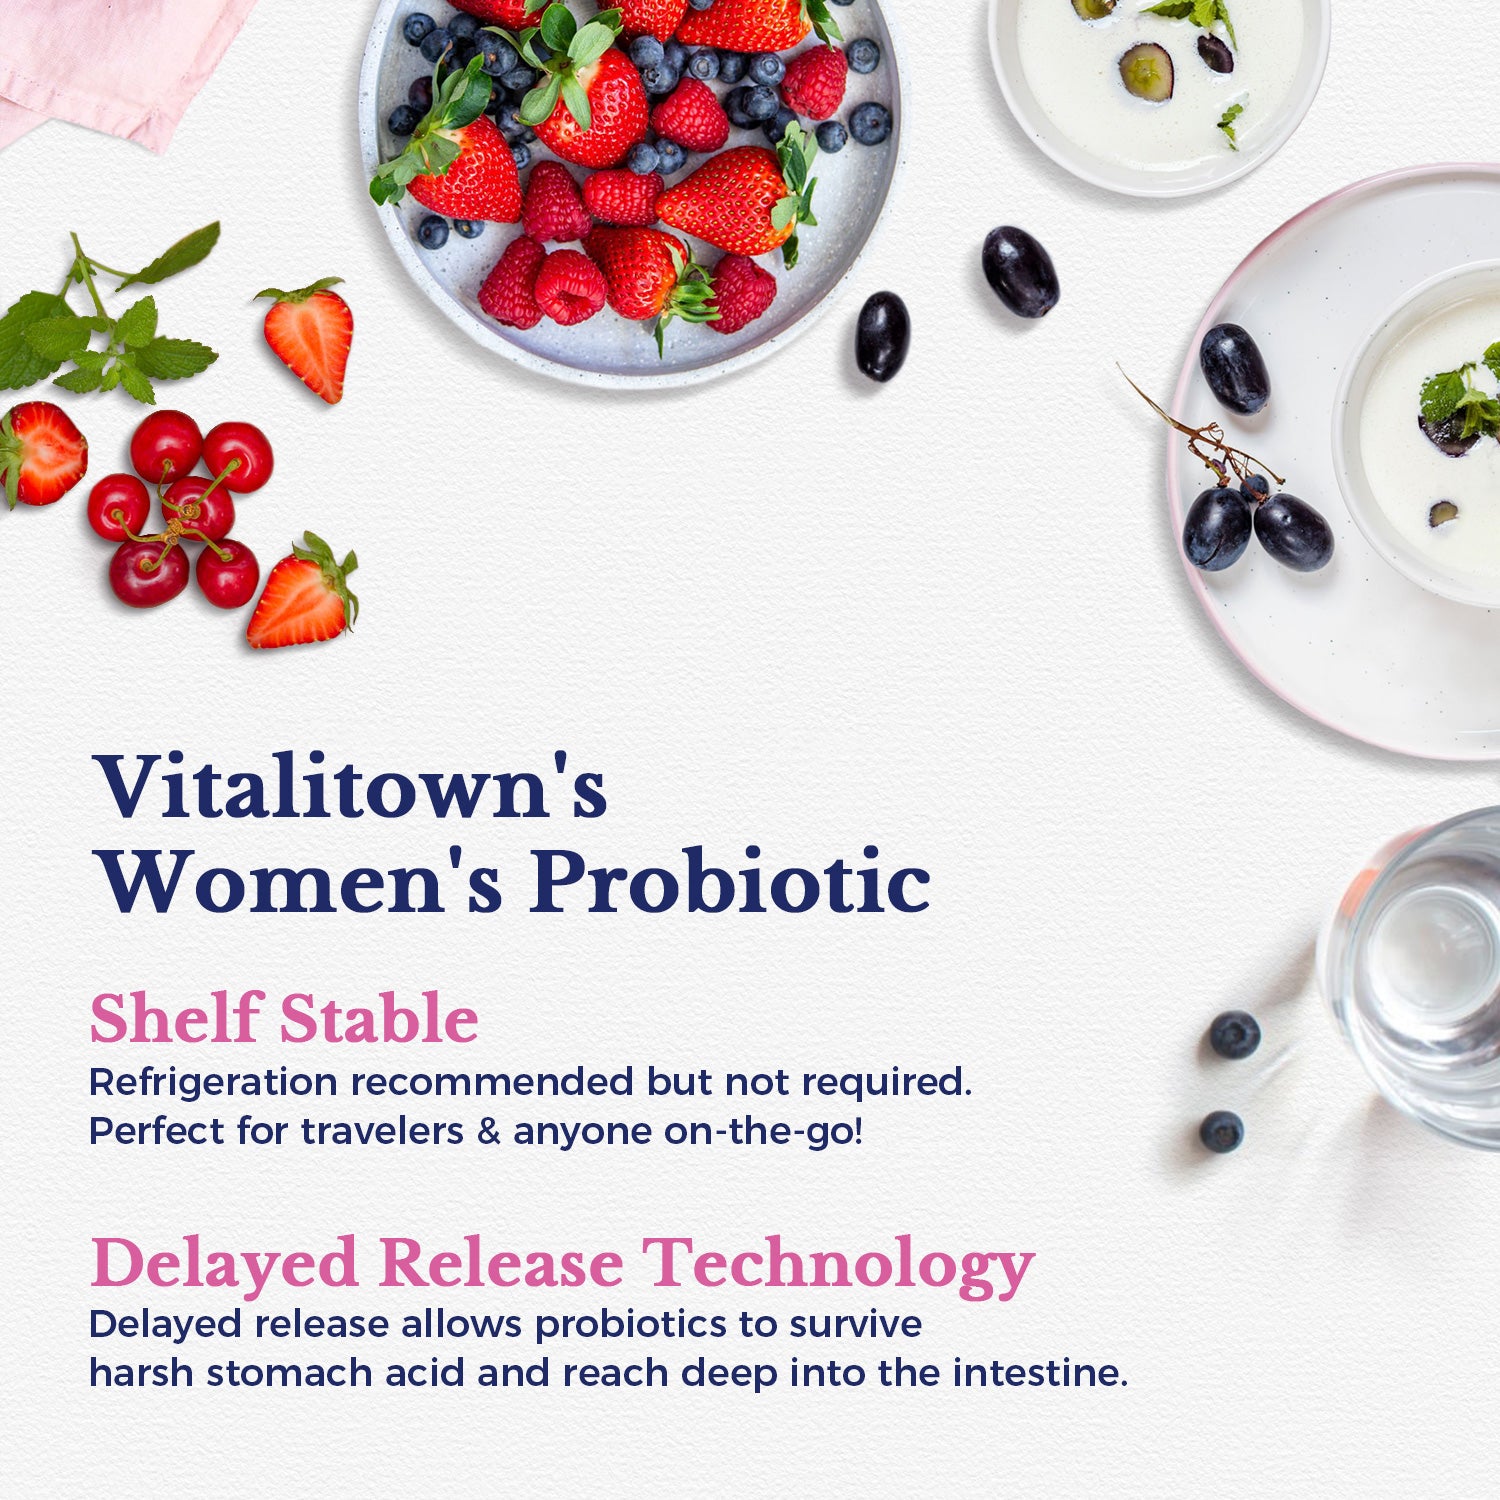 Women's Probiotics + VB6